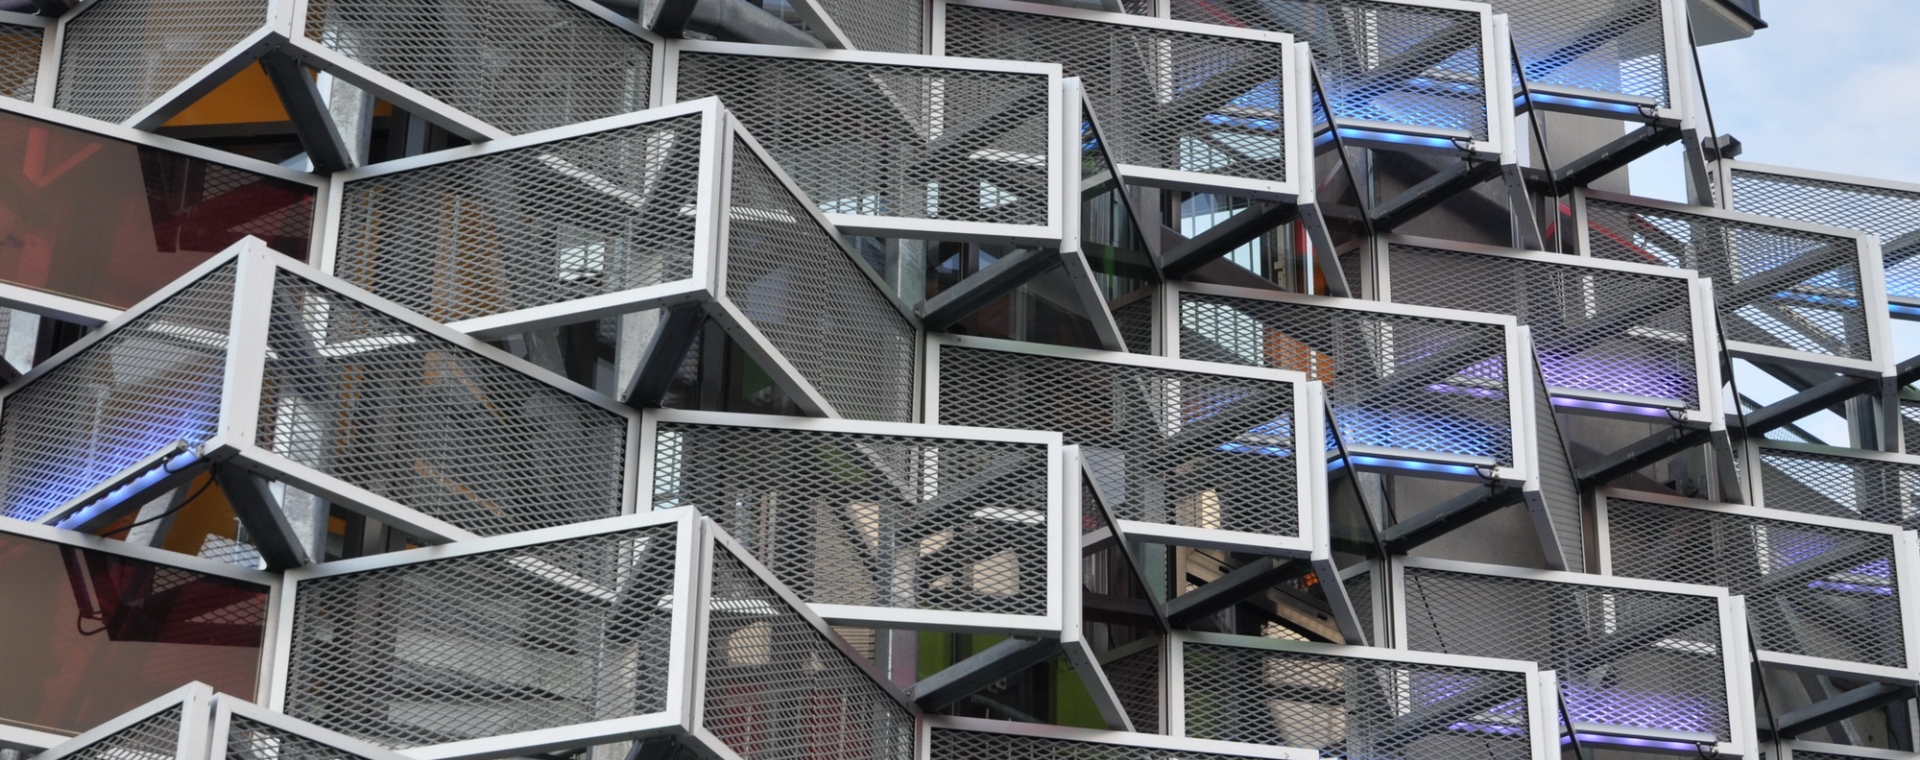 建筑裝飾孔鋼板網安裝在建筑外墻。